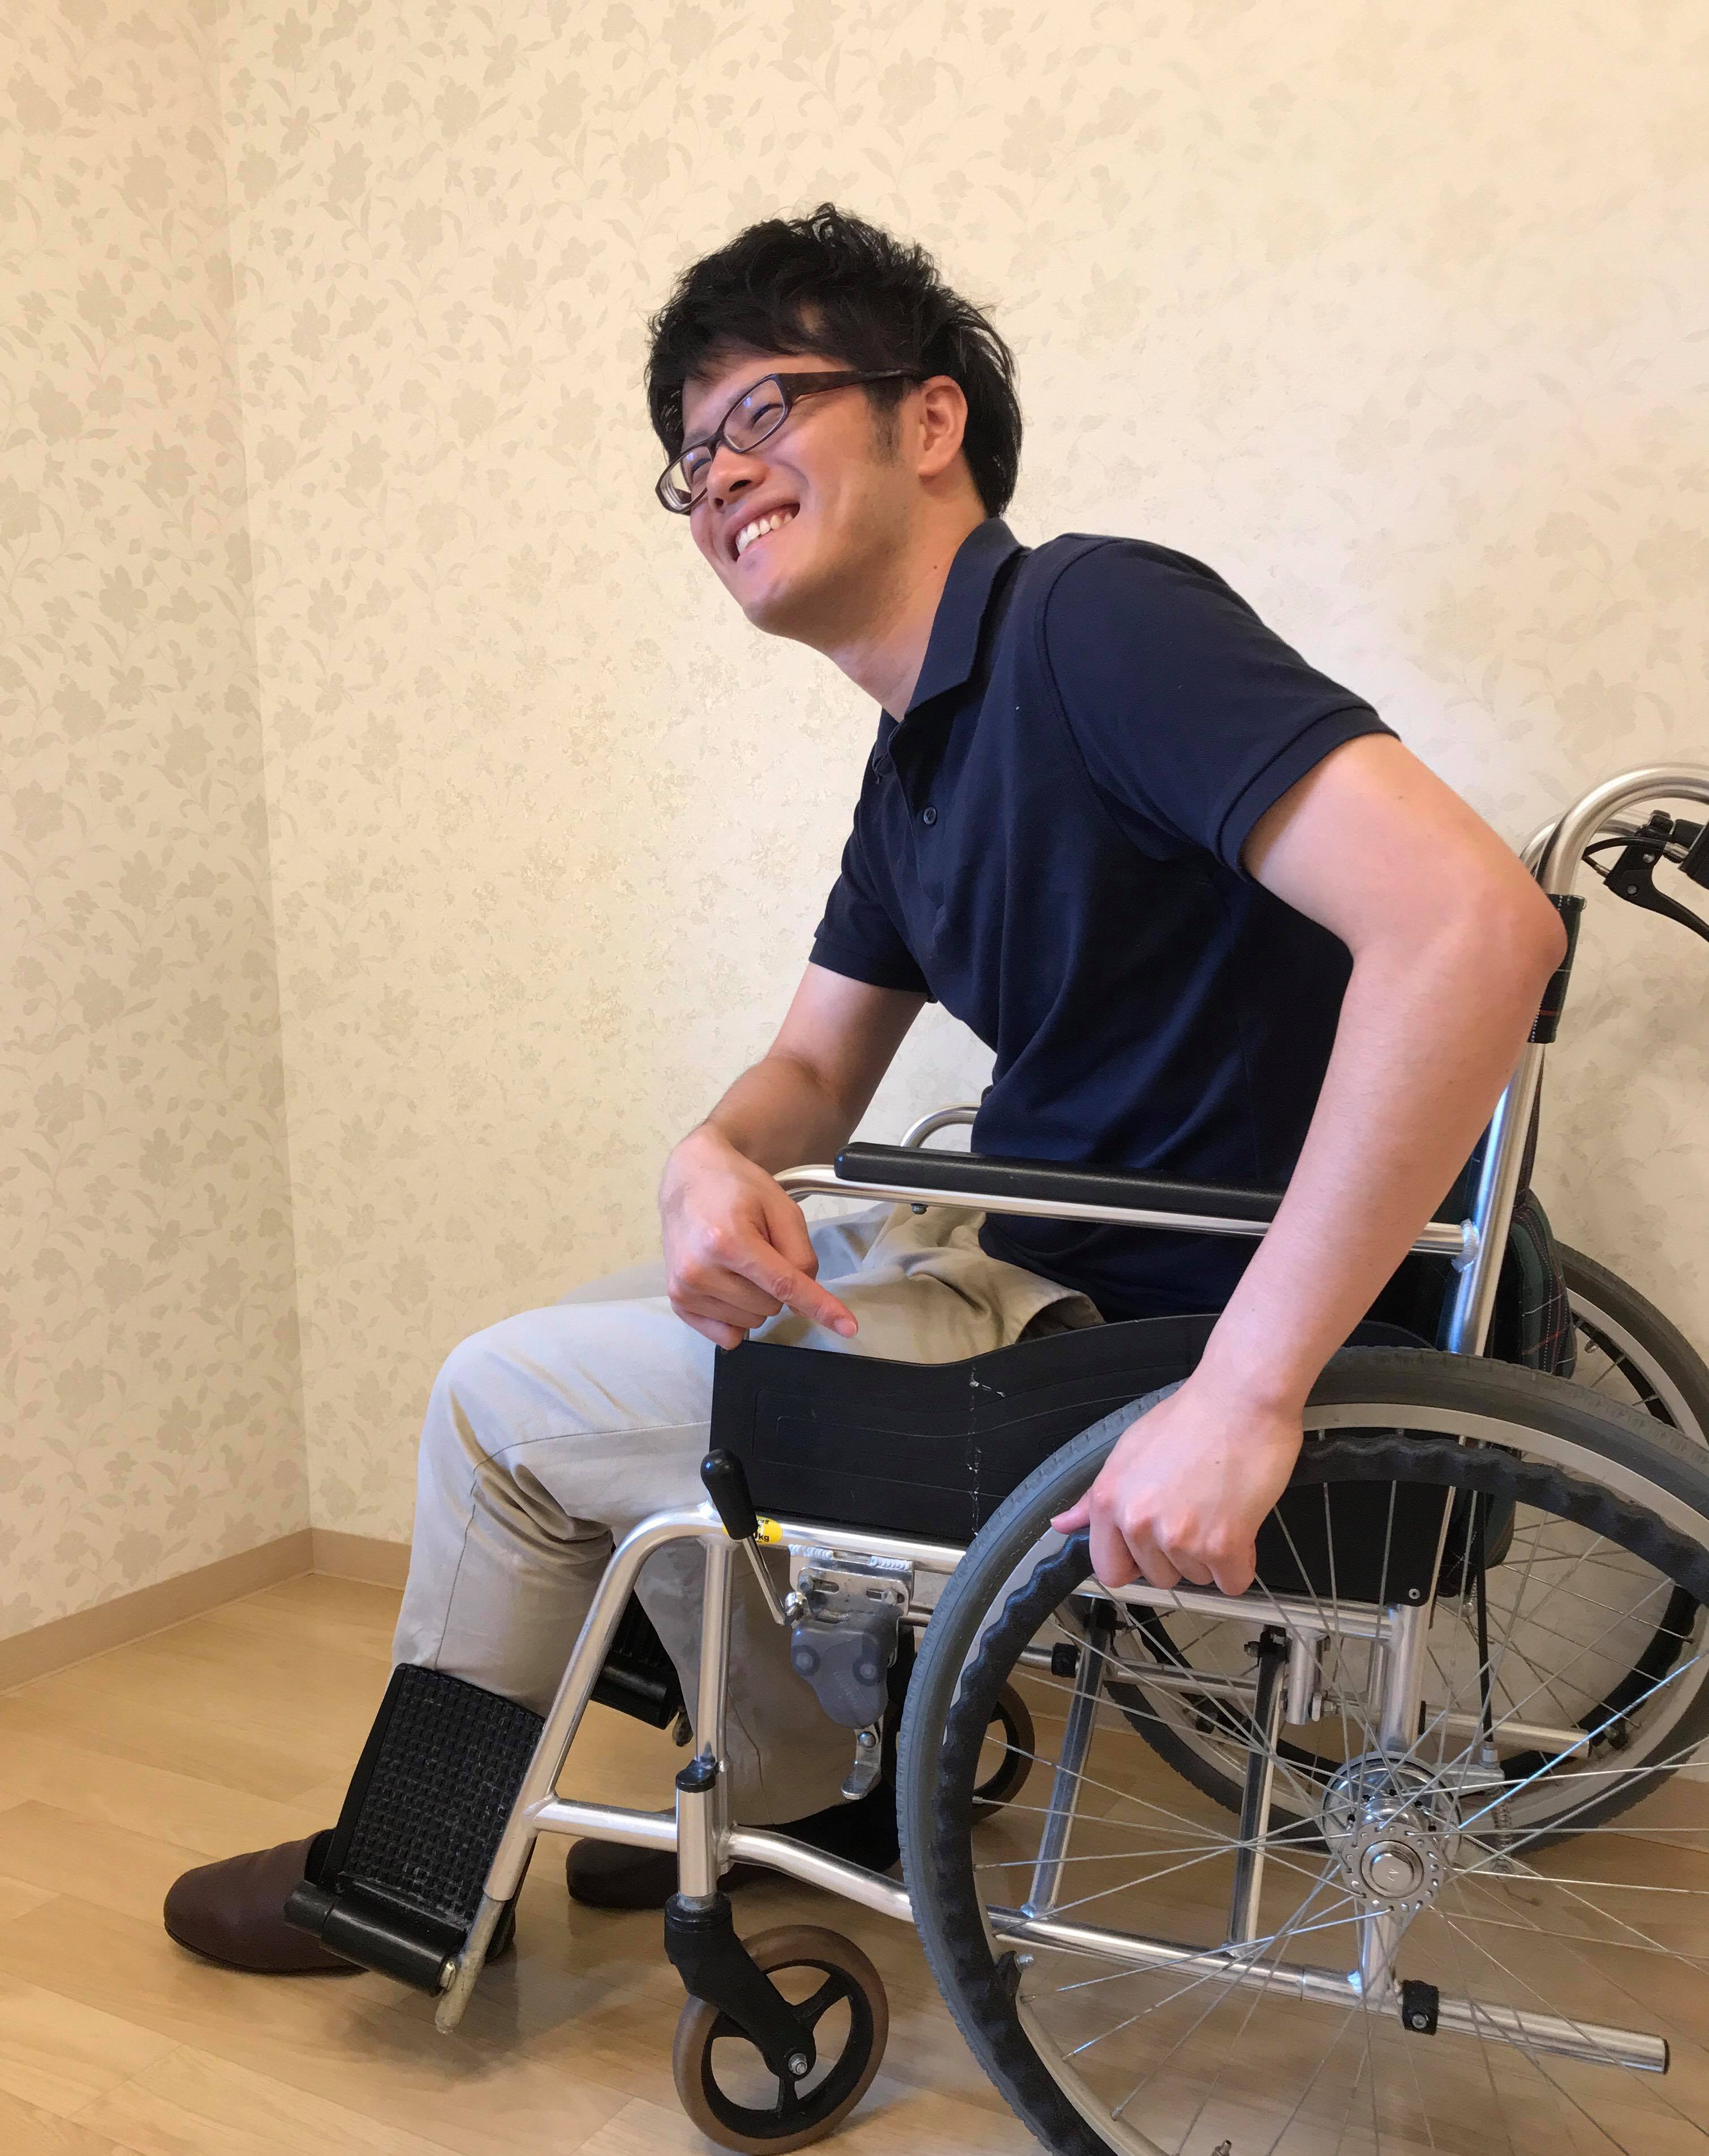 実技で学ぶ全介助トランスファー 寝返り 起き上がり 立位 車椅子移乗の移動援助技術 医療 看護 介護のセミナー 研修情報サイト メデュケーション